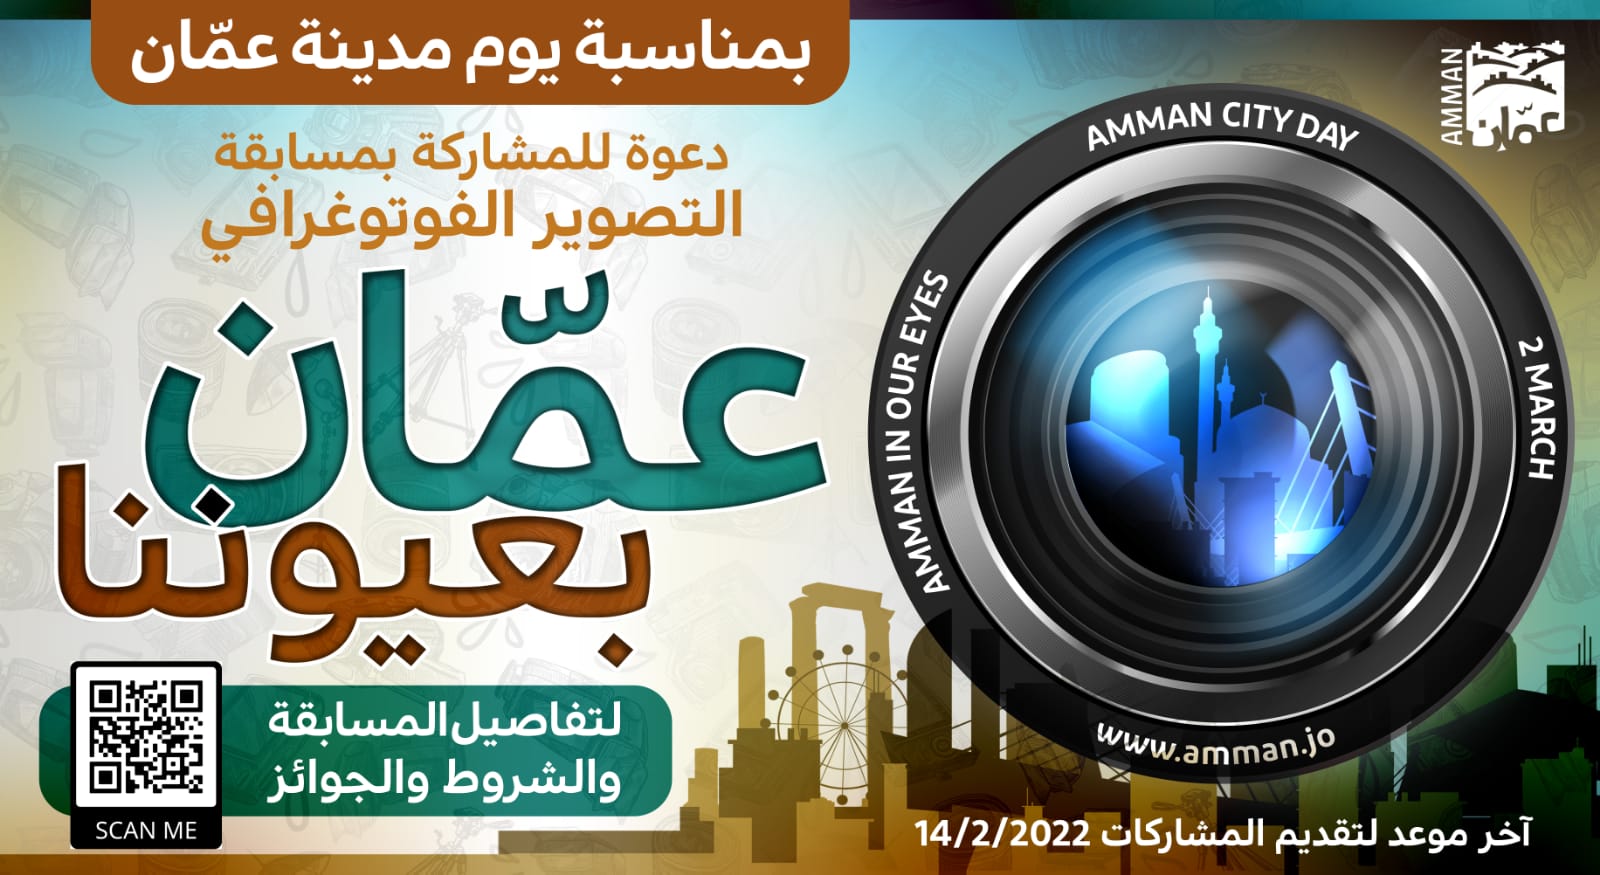 أمانة عمان تطلق مسابقة تصوير فوتوغرافي بمناسبة يوم عمّان 